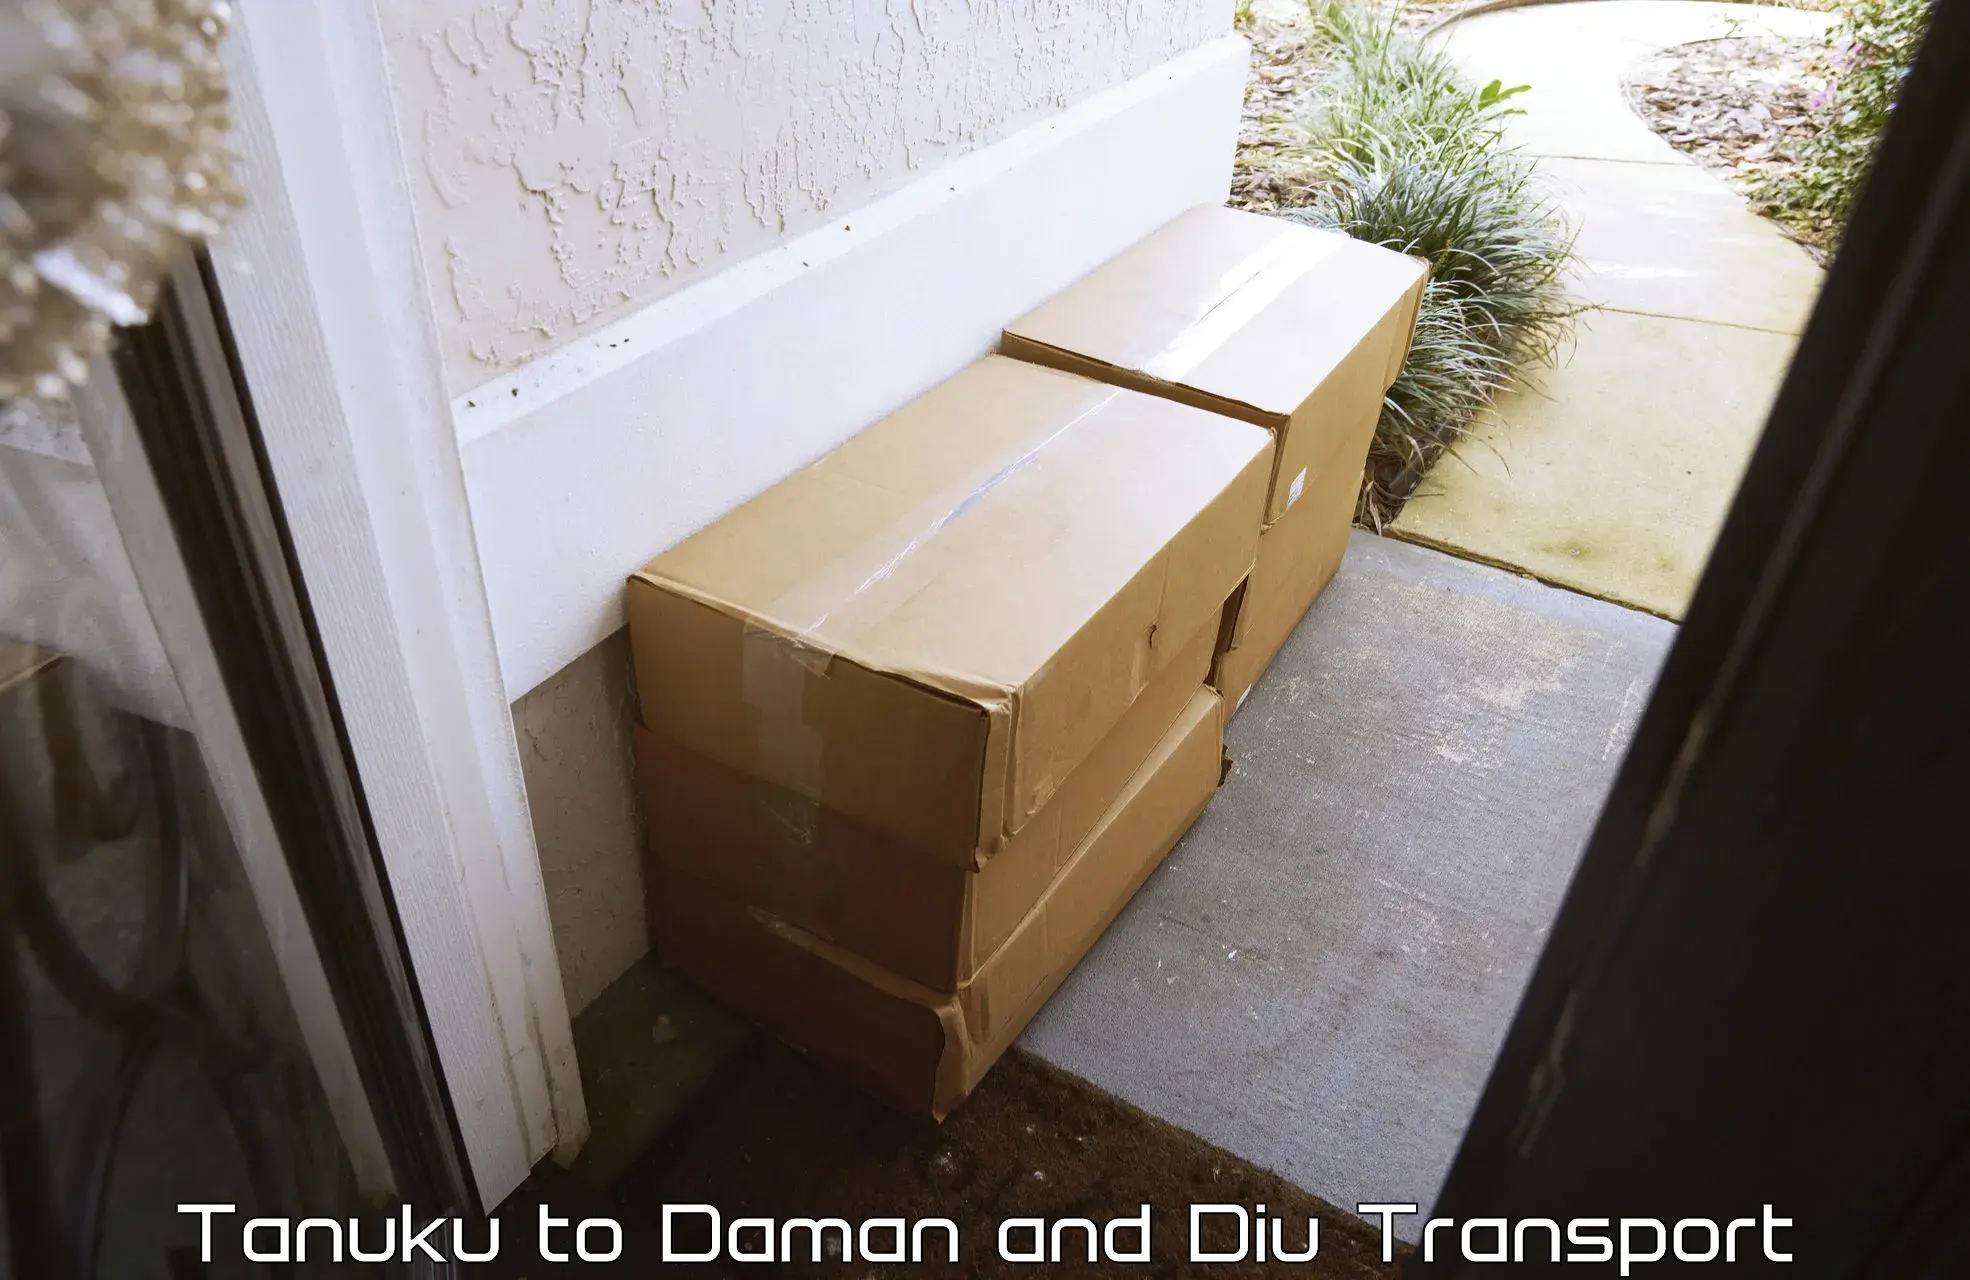 Container transport service Tanuku to Daman and Diu